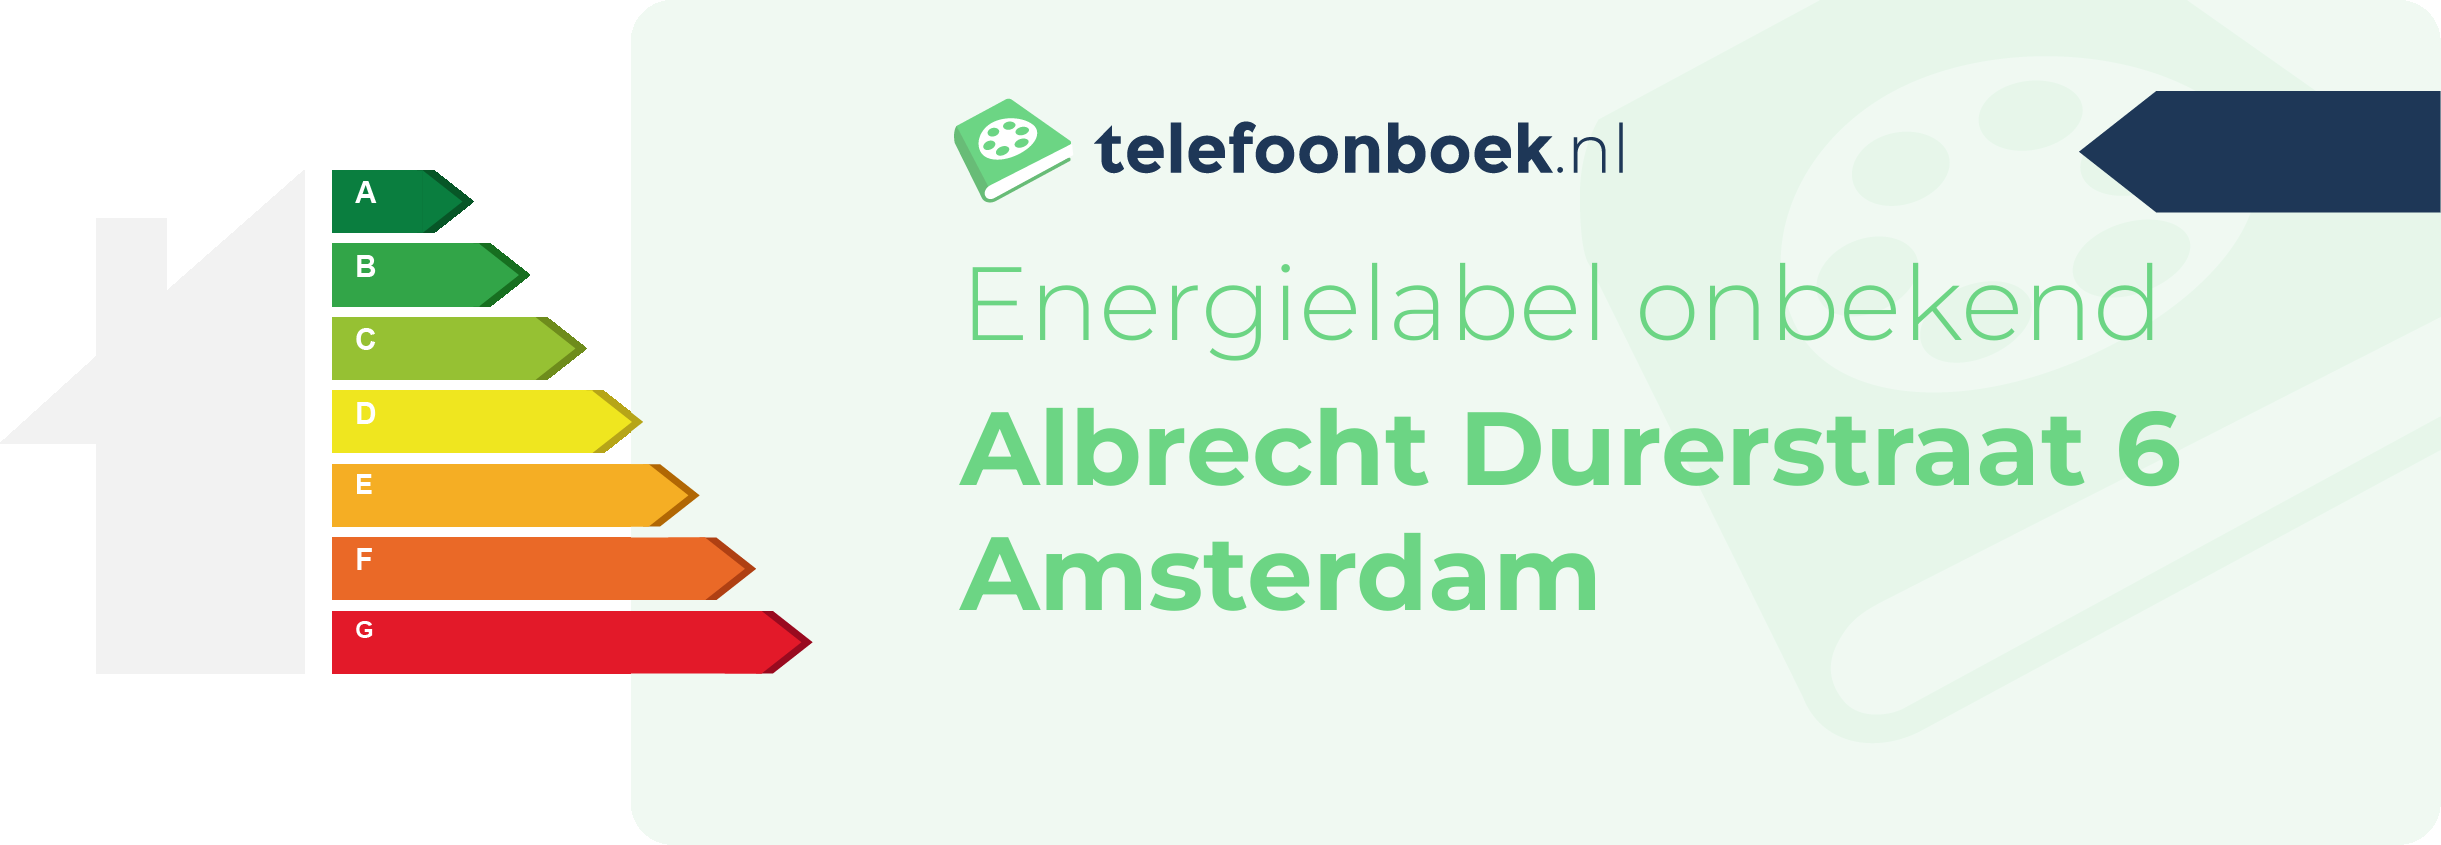 Energielabel Albrecht Durerstraat 6 Amsterdam